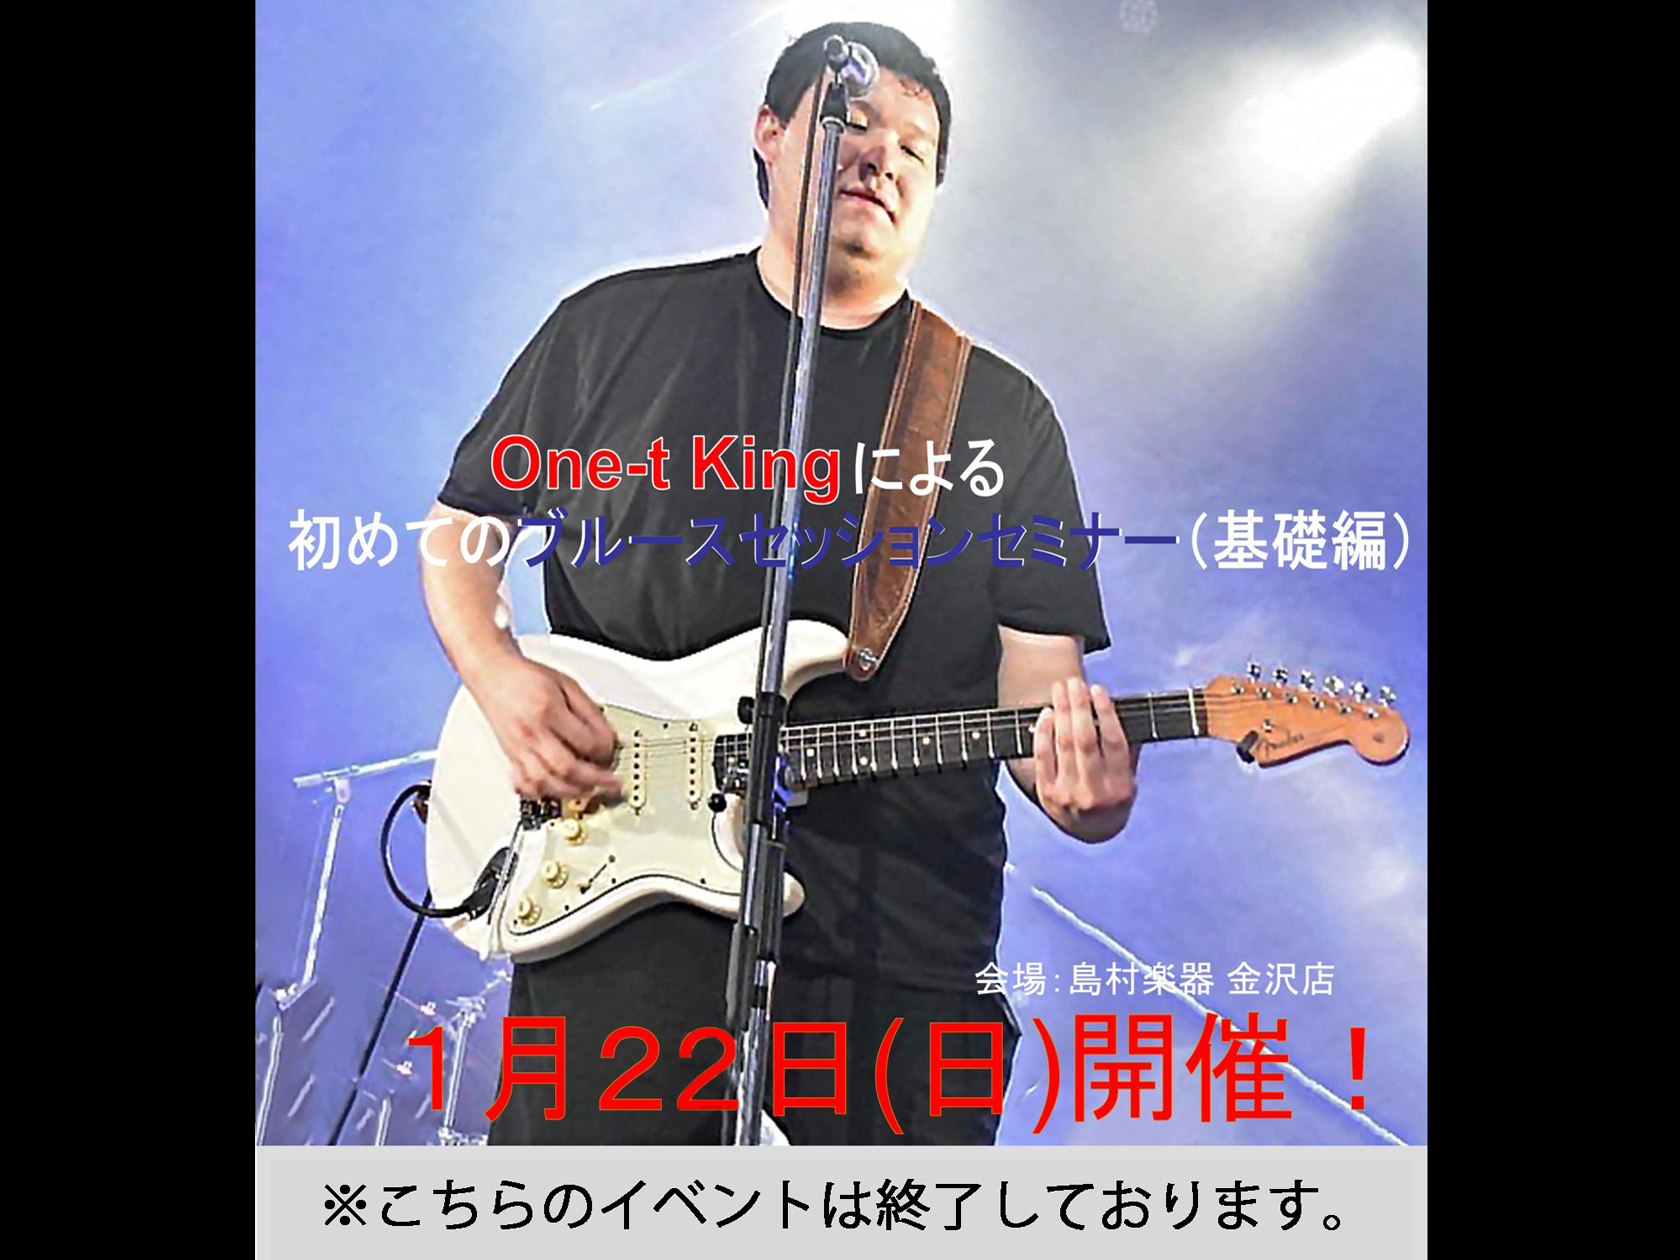 ｜ 【セミナー内容】 ・石川県で活動するブルースギタリスト " One-t King" による初心者向けのブルースセッションセミナーです。 ・参加者は実際にご自身の楽器で参加頂き、One-t King とセッションしながら Blues のイロハを学んで頂けます。 ・基本となるのは☟の 12小節で構成 […]